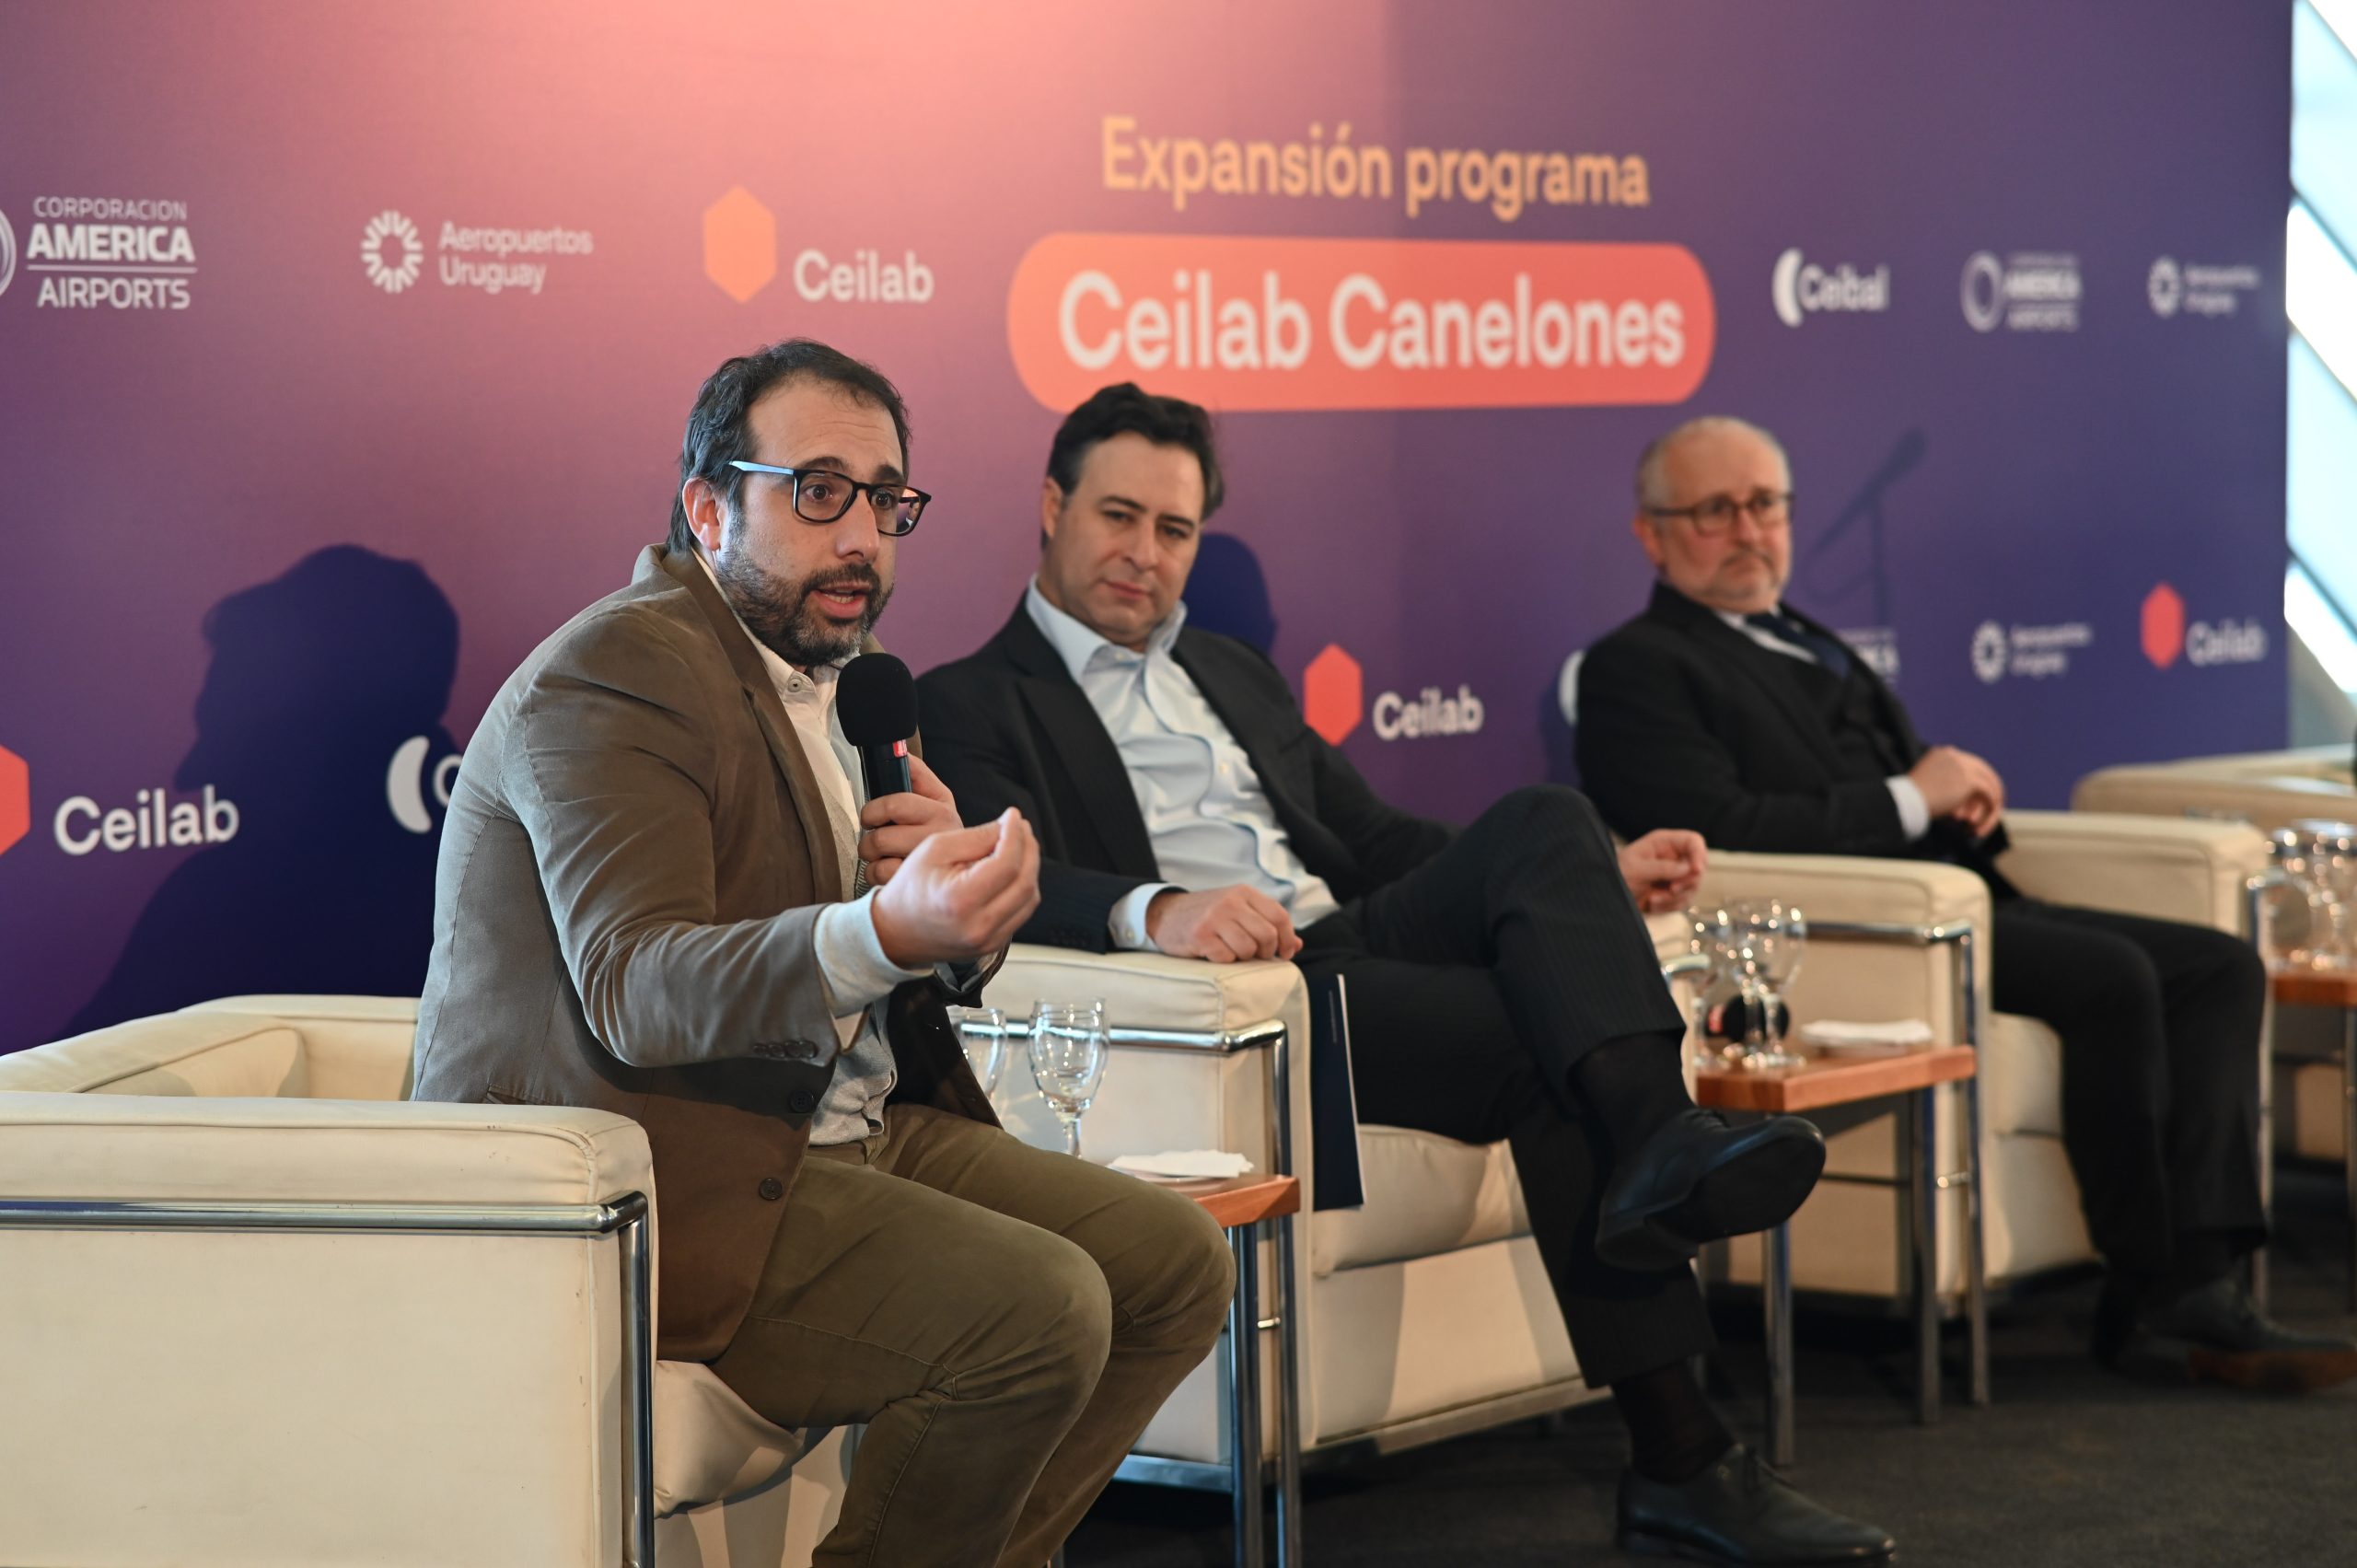 Corporación América Airports y Ceibal firman alianza para instalar laboratorios de innovación para jóvenes 